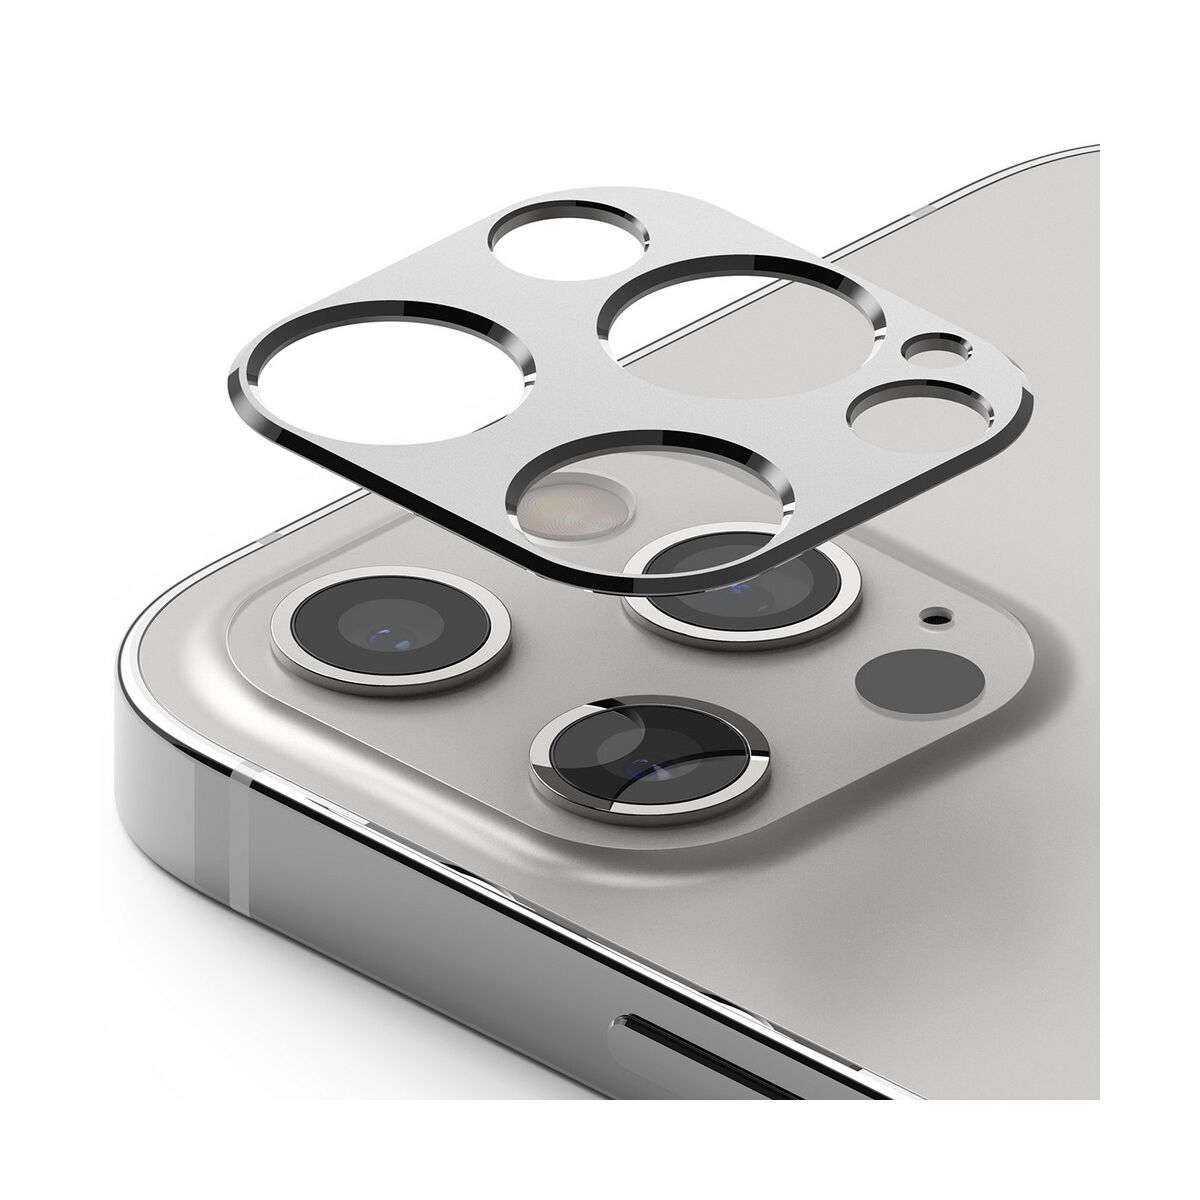 Ringke iPhone 12 Pro Max, Camera Stlying, kamera sziget védő keret, Ezüst